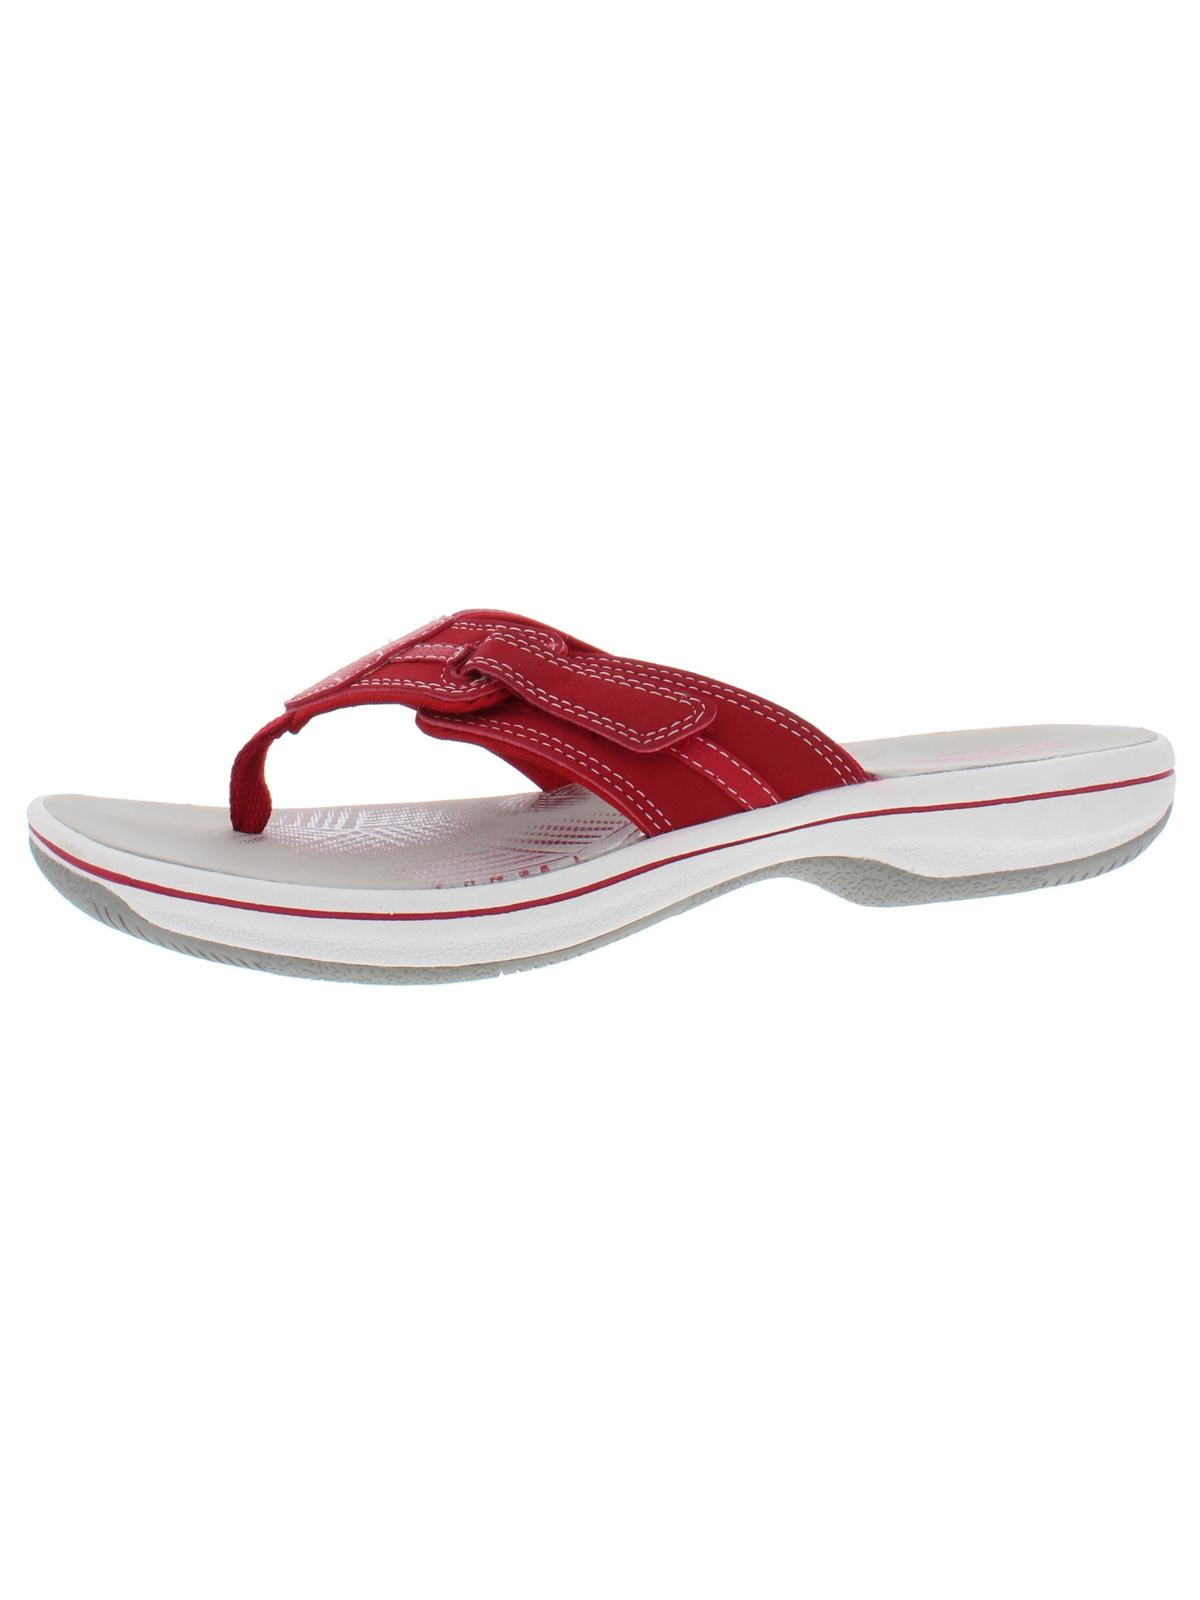 clarks sandals size 6